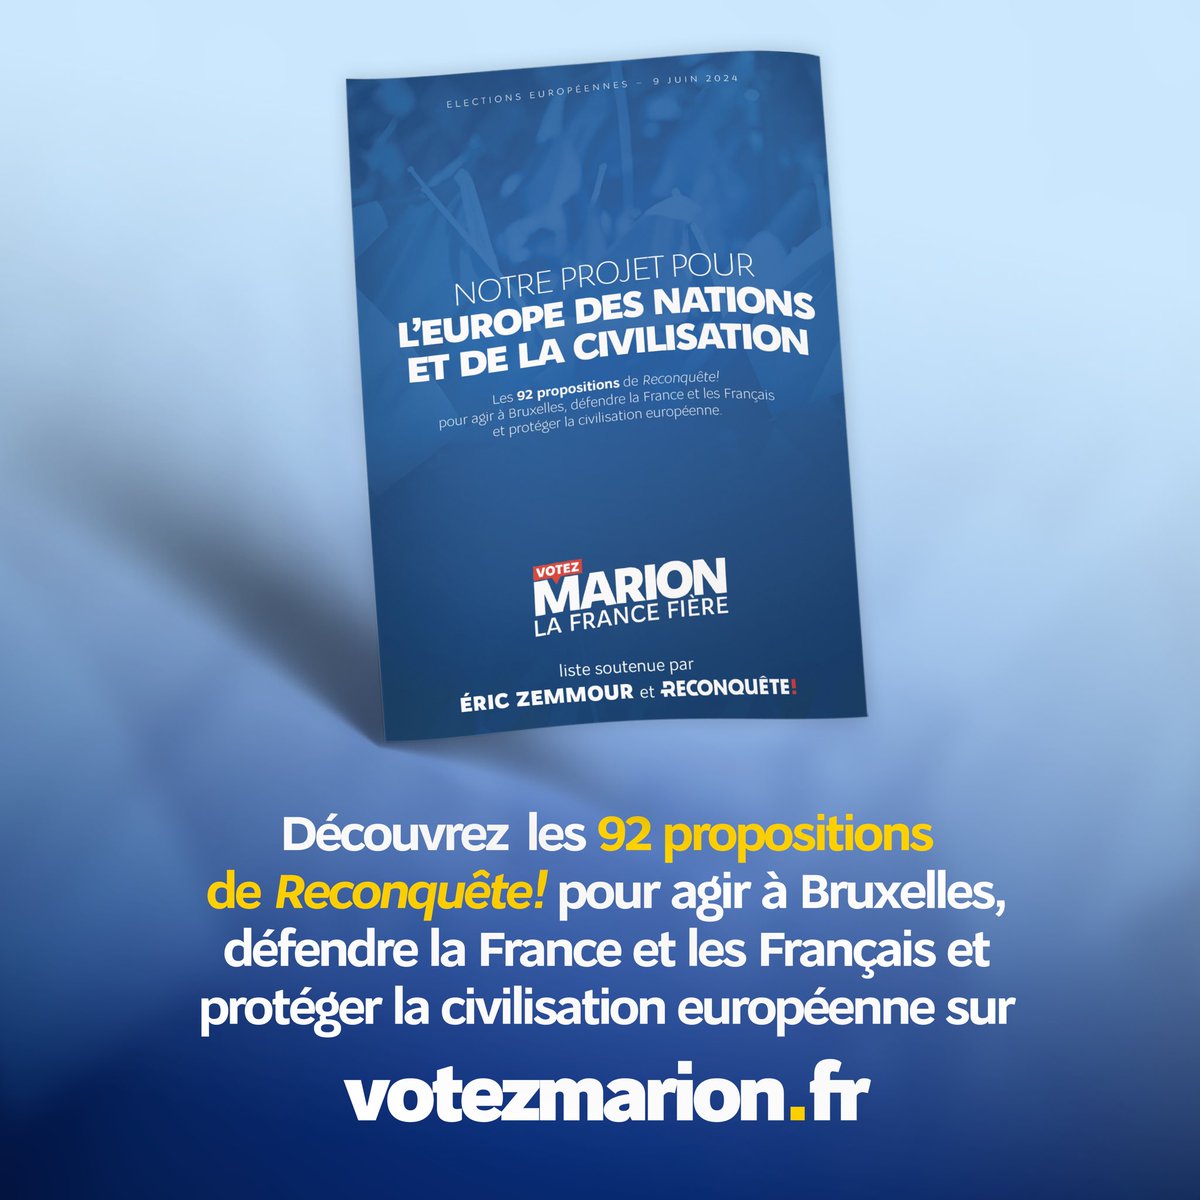 Nous sommes fiers de vous présenter notre projet pour les élections européennes. Un projet sérieux et ambitieux pour défendre la France, les Français et notre civilisation ! 👉 votezmarion.fr/notre-projet/ #VotezMarion